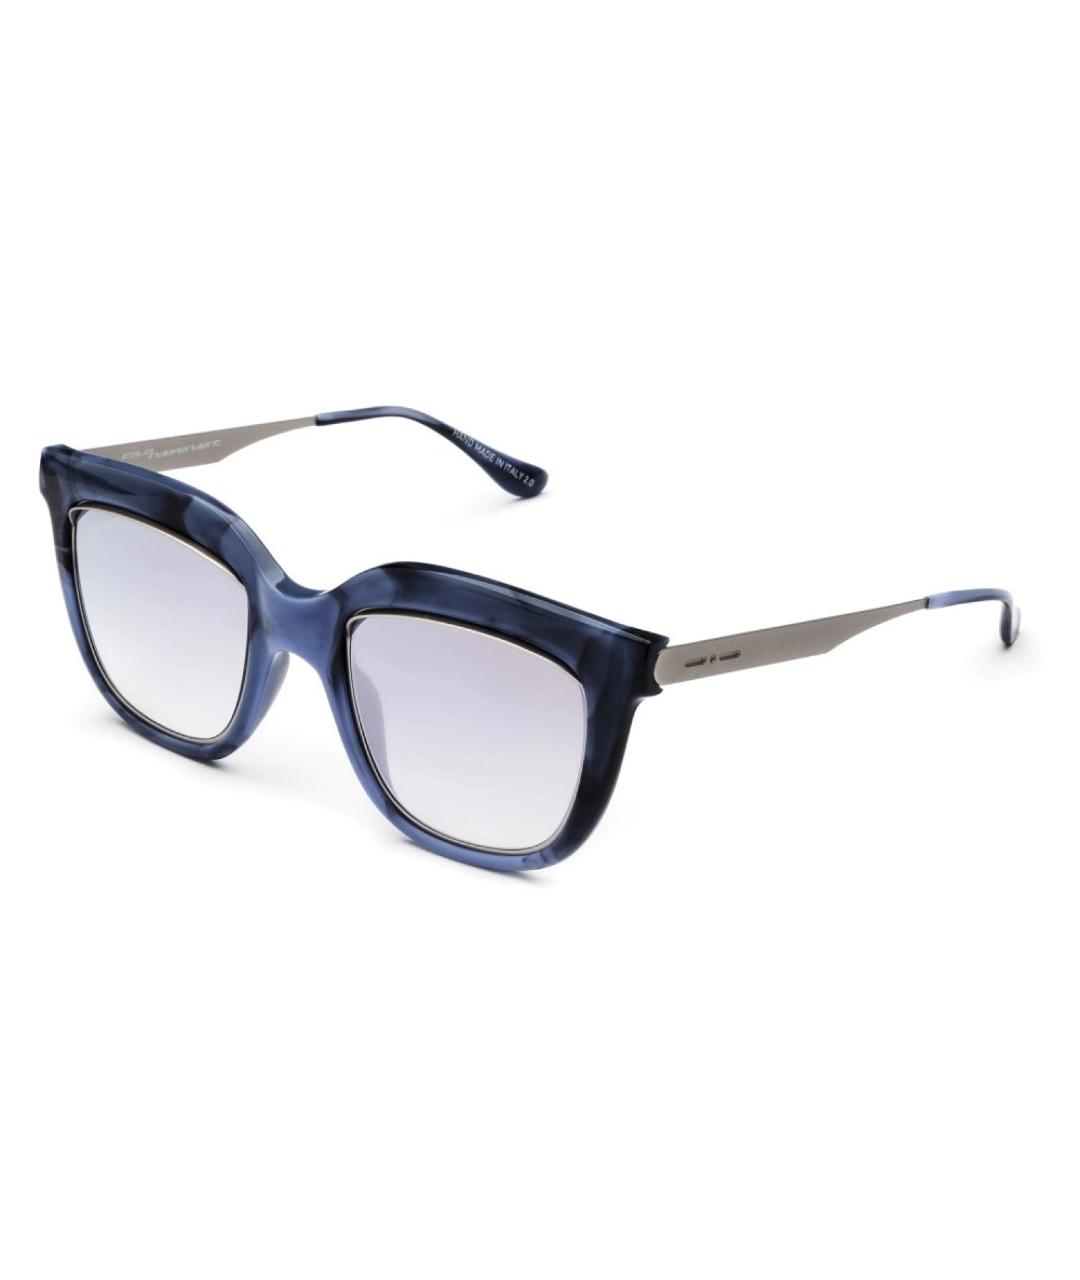 ITALIA INDEPENDENT Голубые пластиковые солнцезащитные очки, фото 2